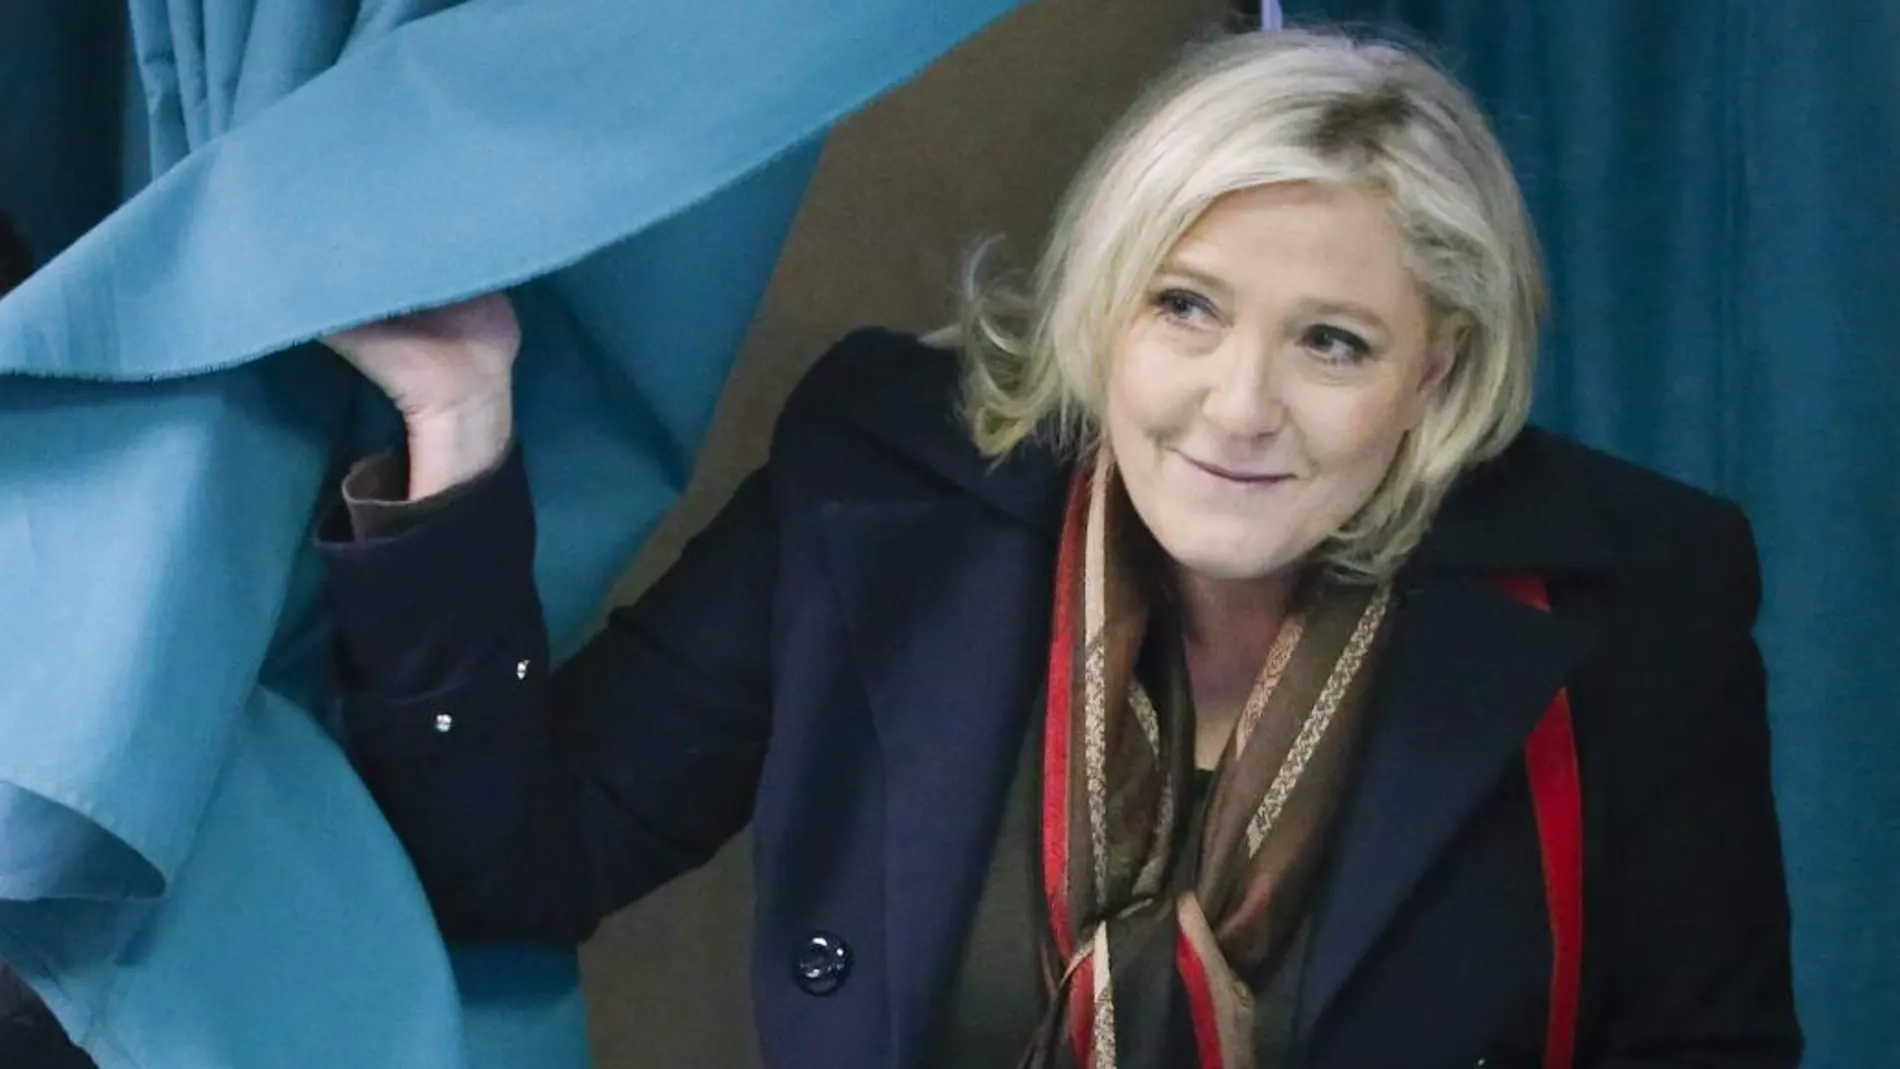 La líder del Frente Nacional, Marine Le Pen, abandona el colegio de electoral de Henin-Beaumont, en el norte de Francia, tras votar.